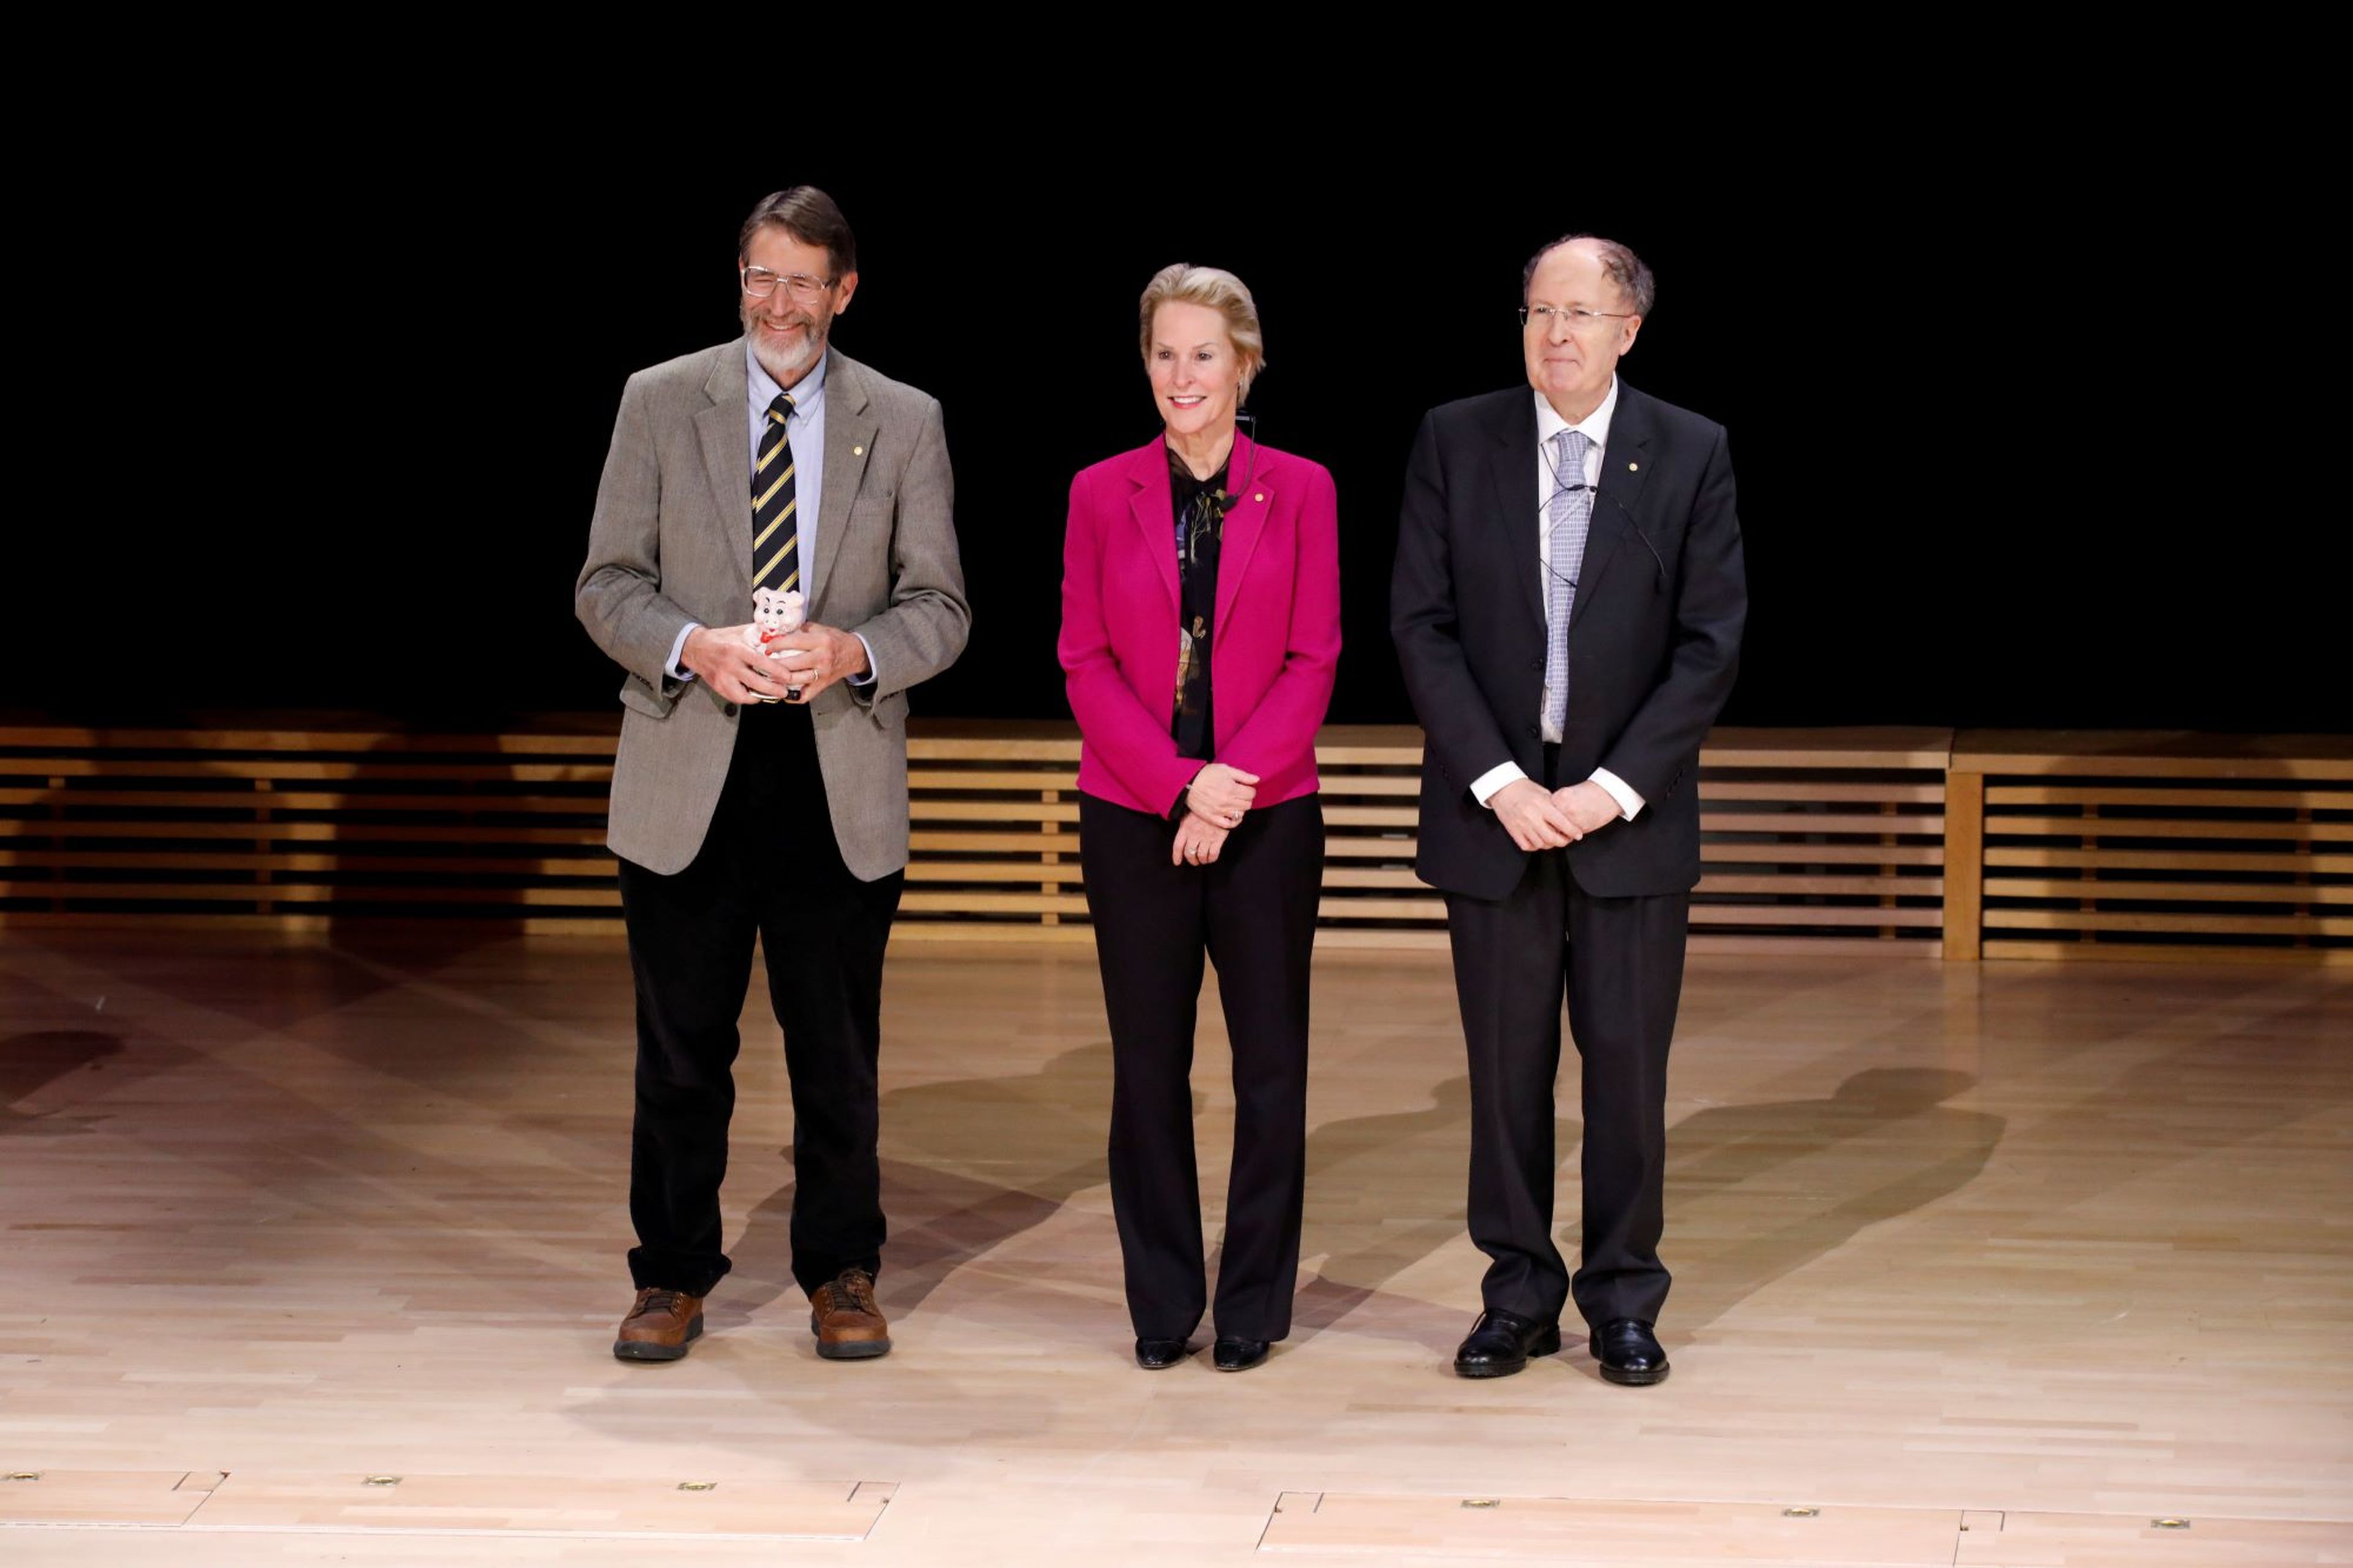 George P. Smith, Frances H. Arnold y Gregory P. Winter, ganadores del Premio Nobel de Química en 2018.